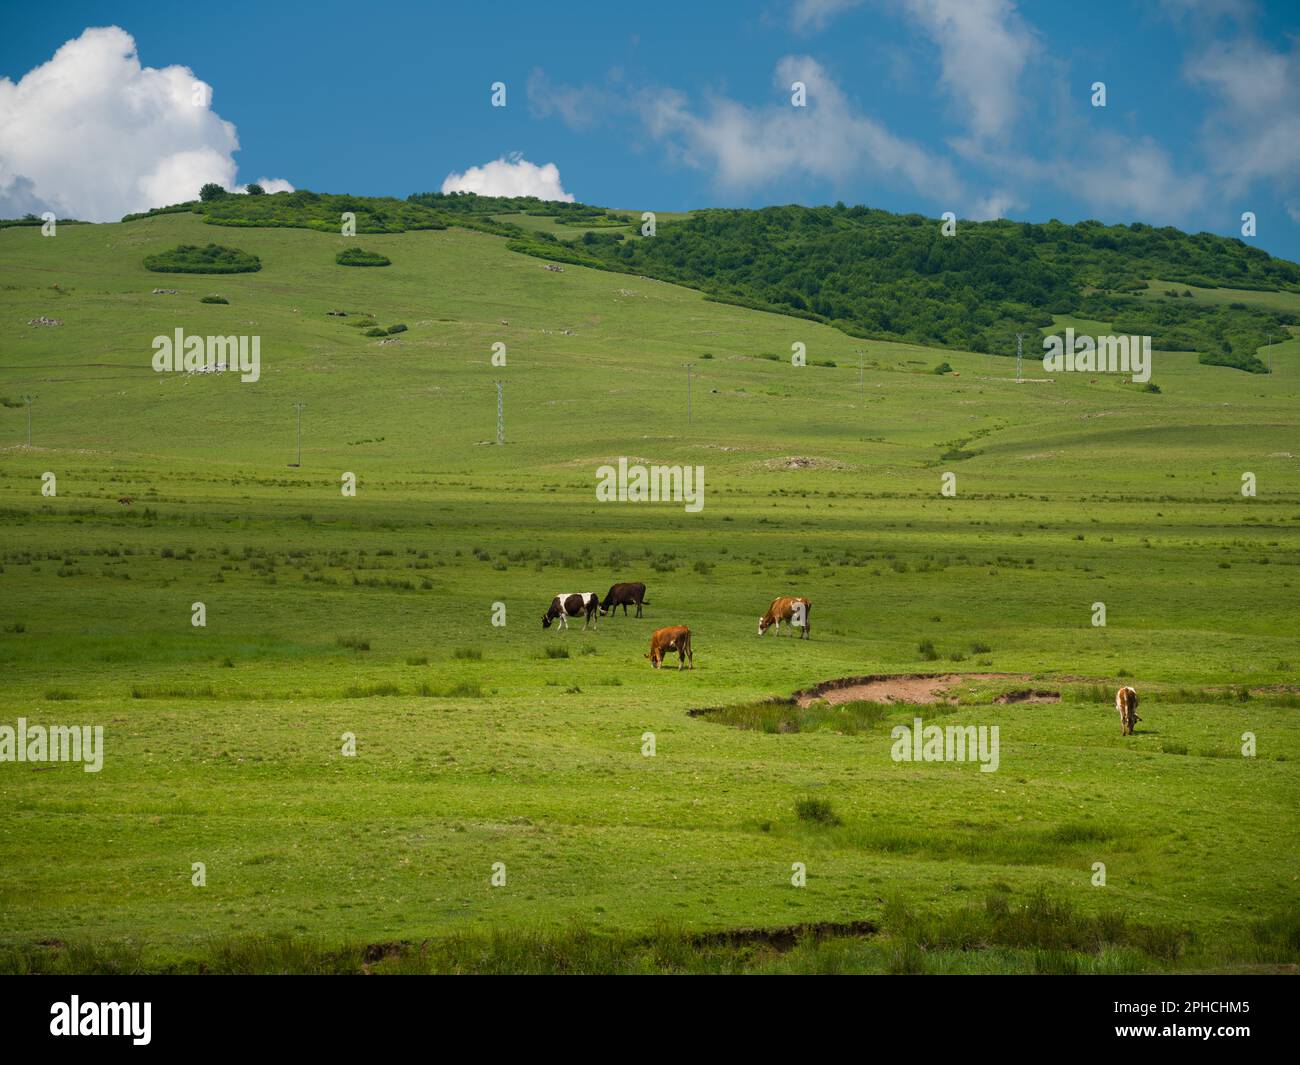 Vaches paissant dans la prairie. Prés du plateau de Persembe. District d'Aybasti, Ordu, Turquie Banque D'Images